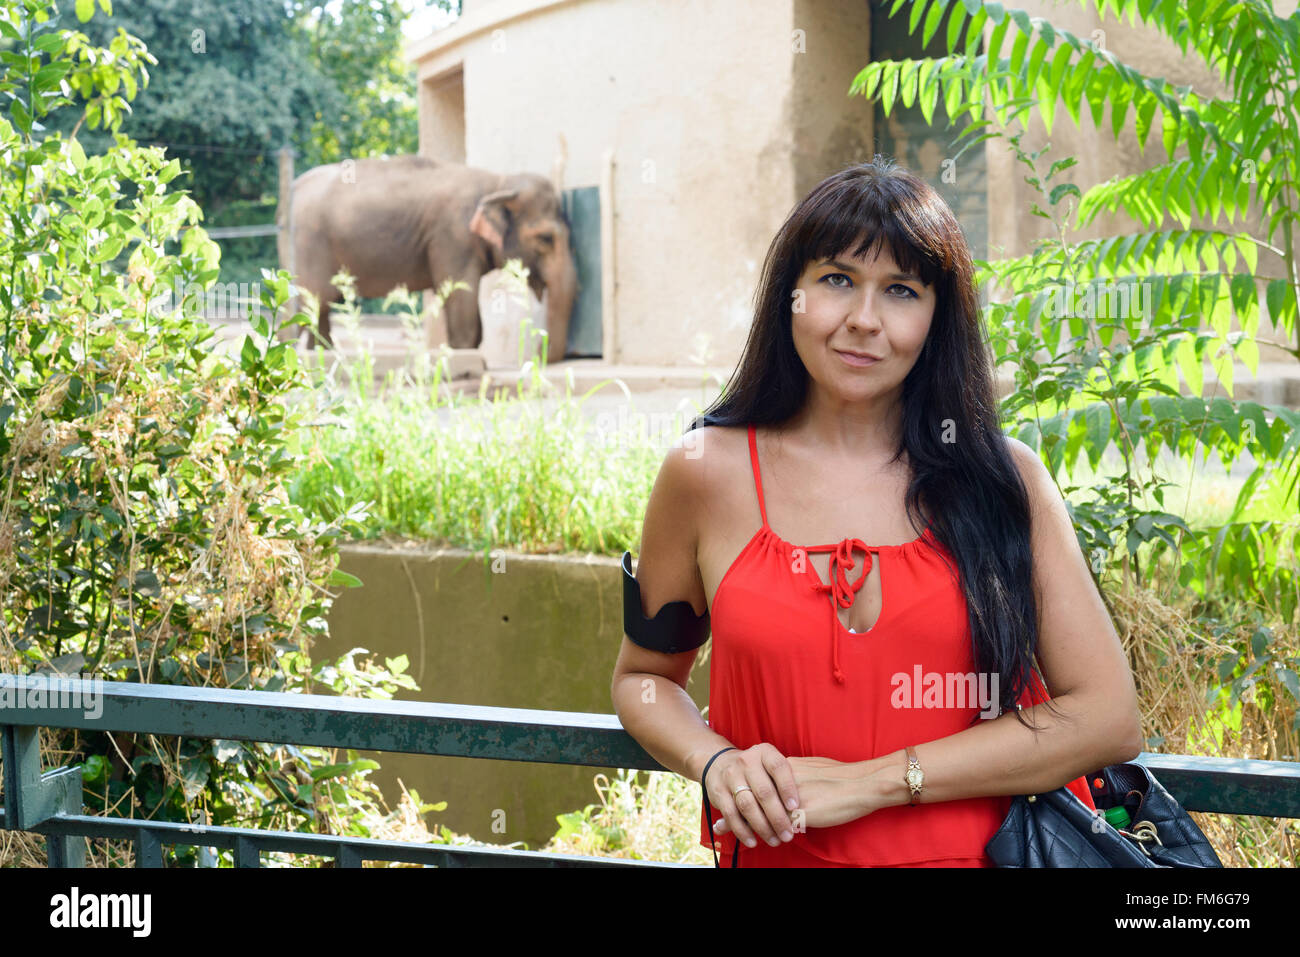 Mädchen lächelnd zwischen Grünpflanzen, ein Elefant im Hintergrund Stockfoto